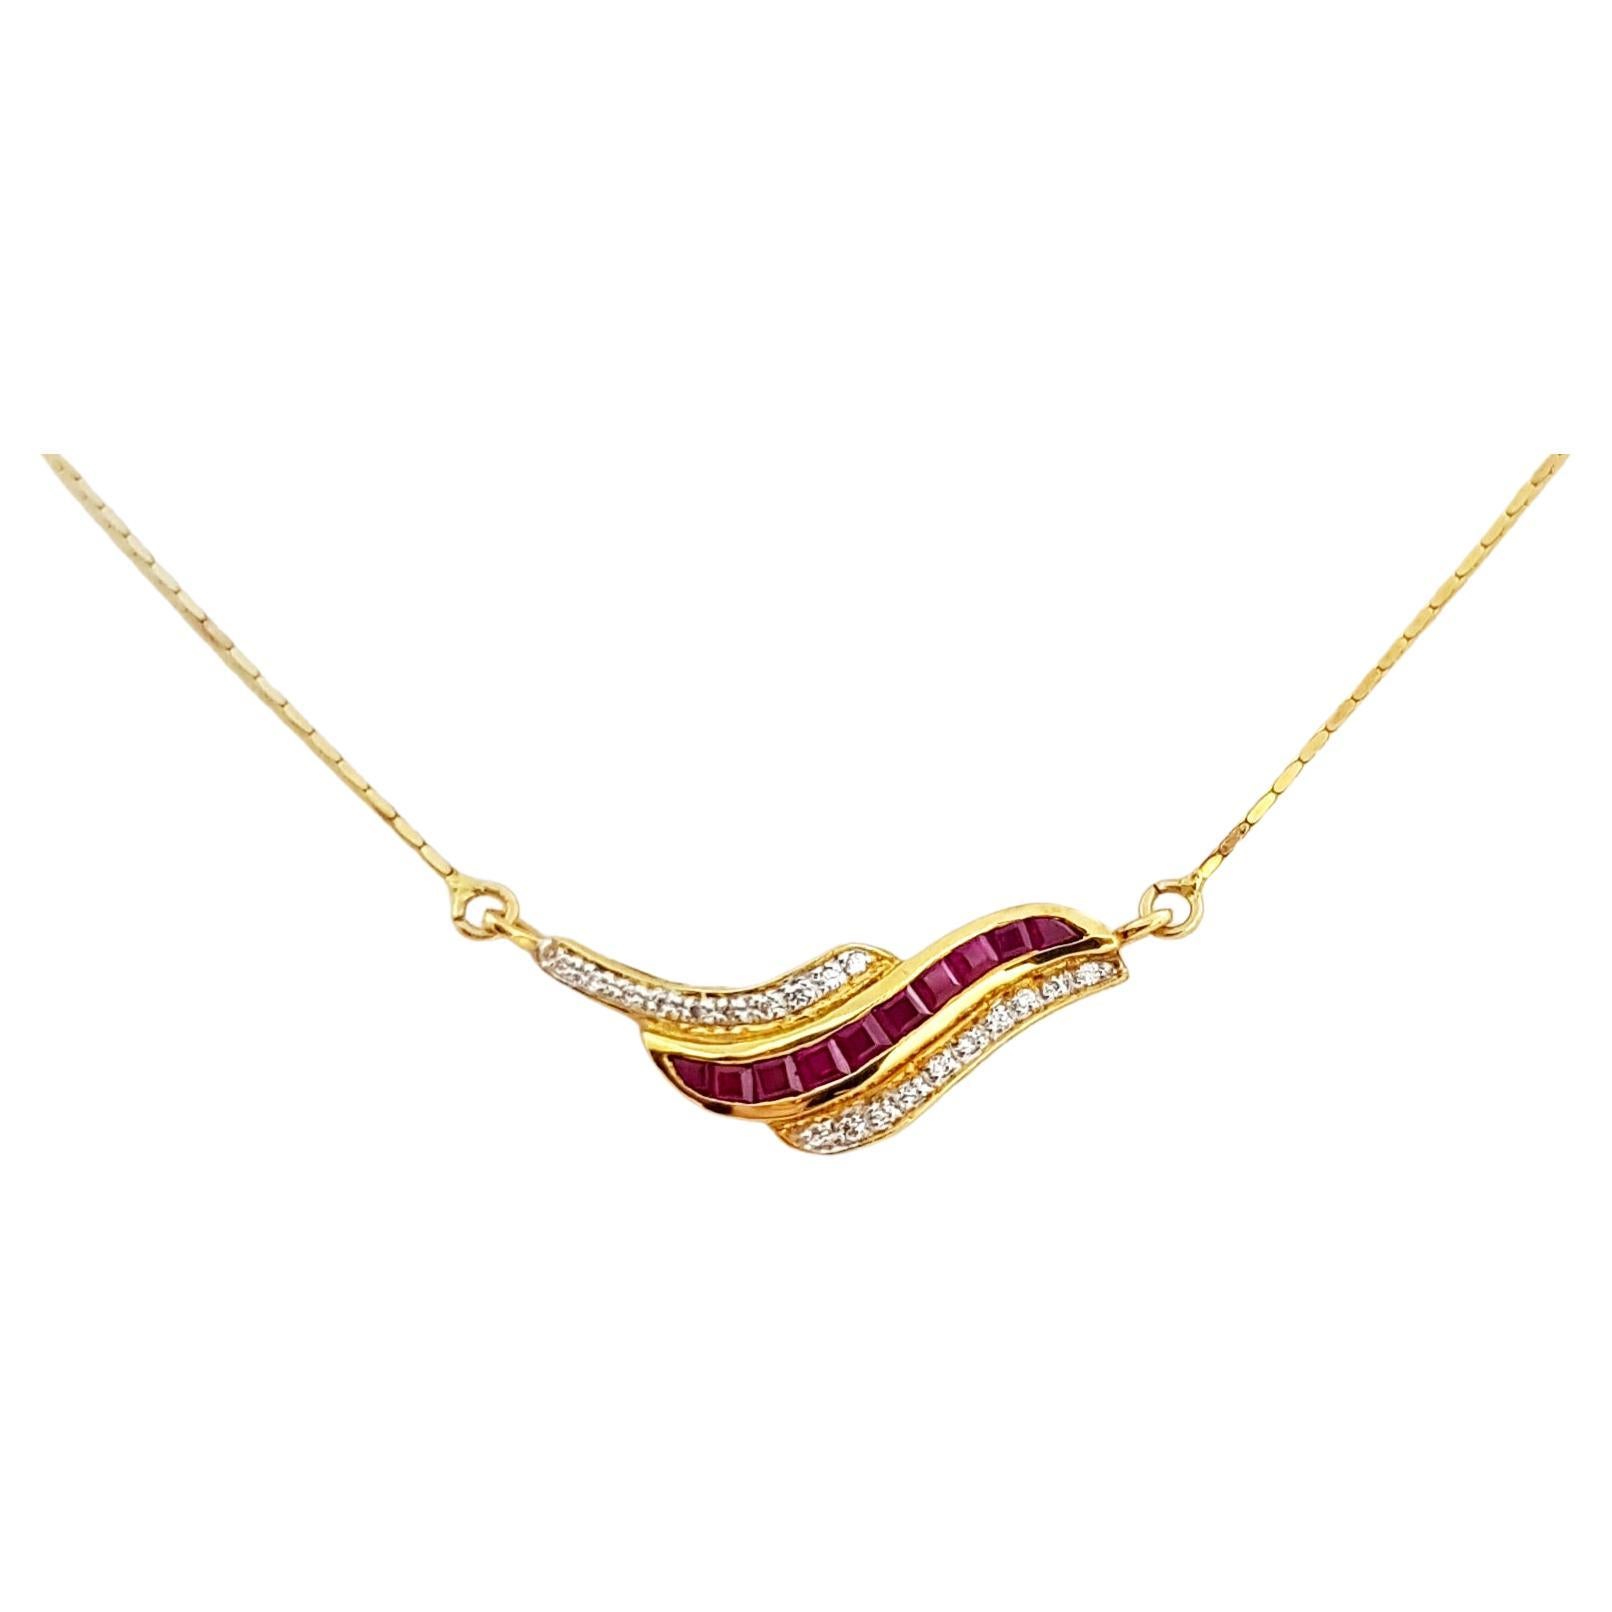 Halskette mit Rubin und Diamant in 18 Karat Goldfassungen gefasst